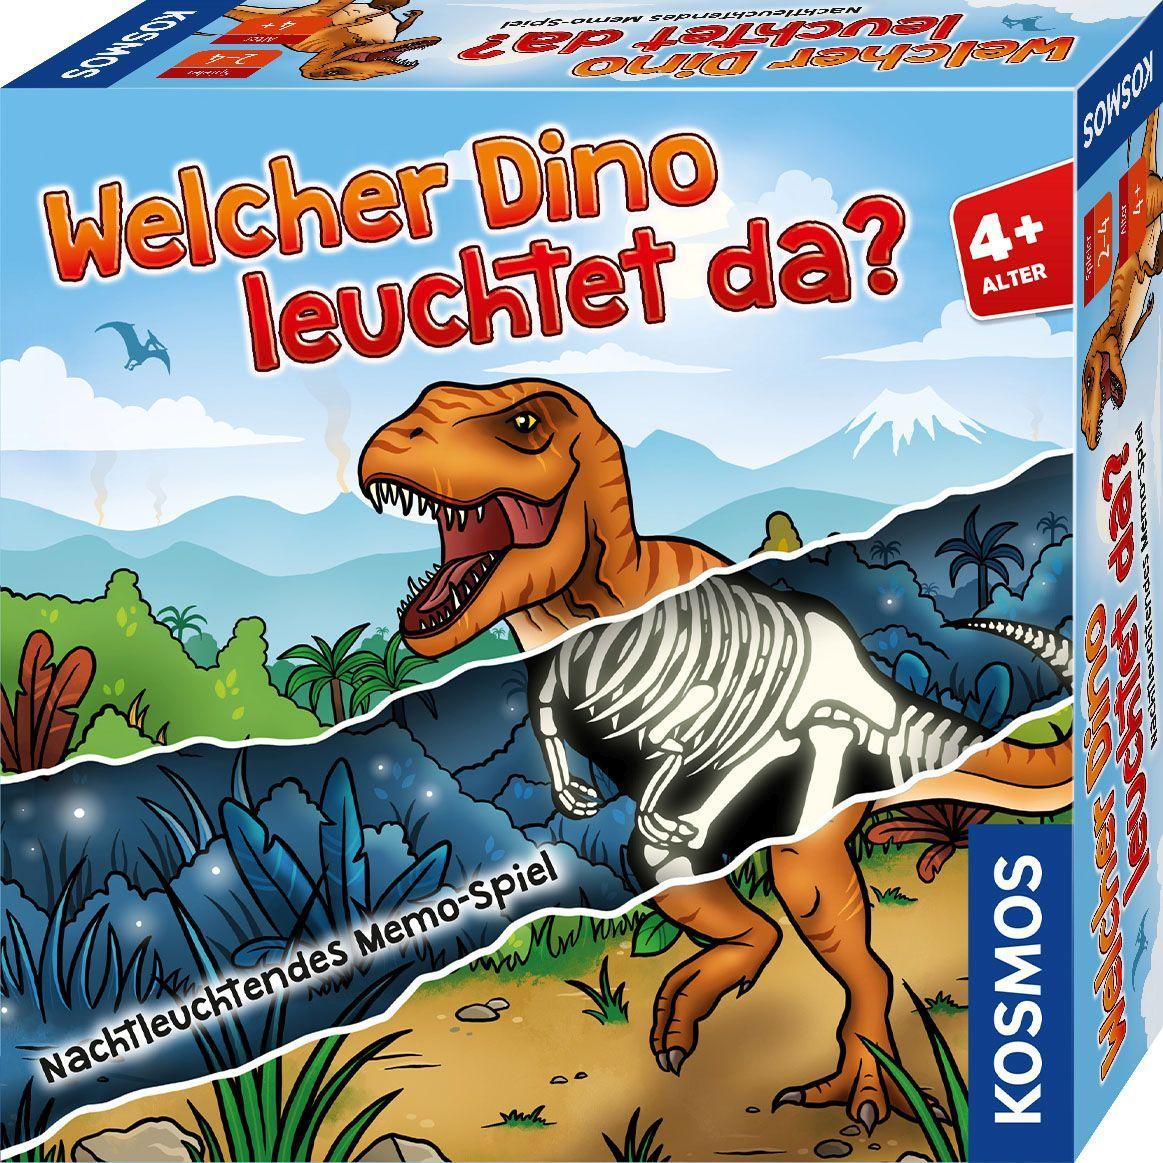 Game/Toy Welcher Dino leuchtet da? 